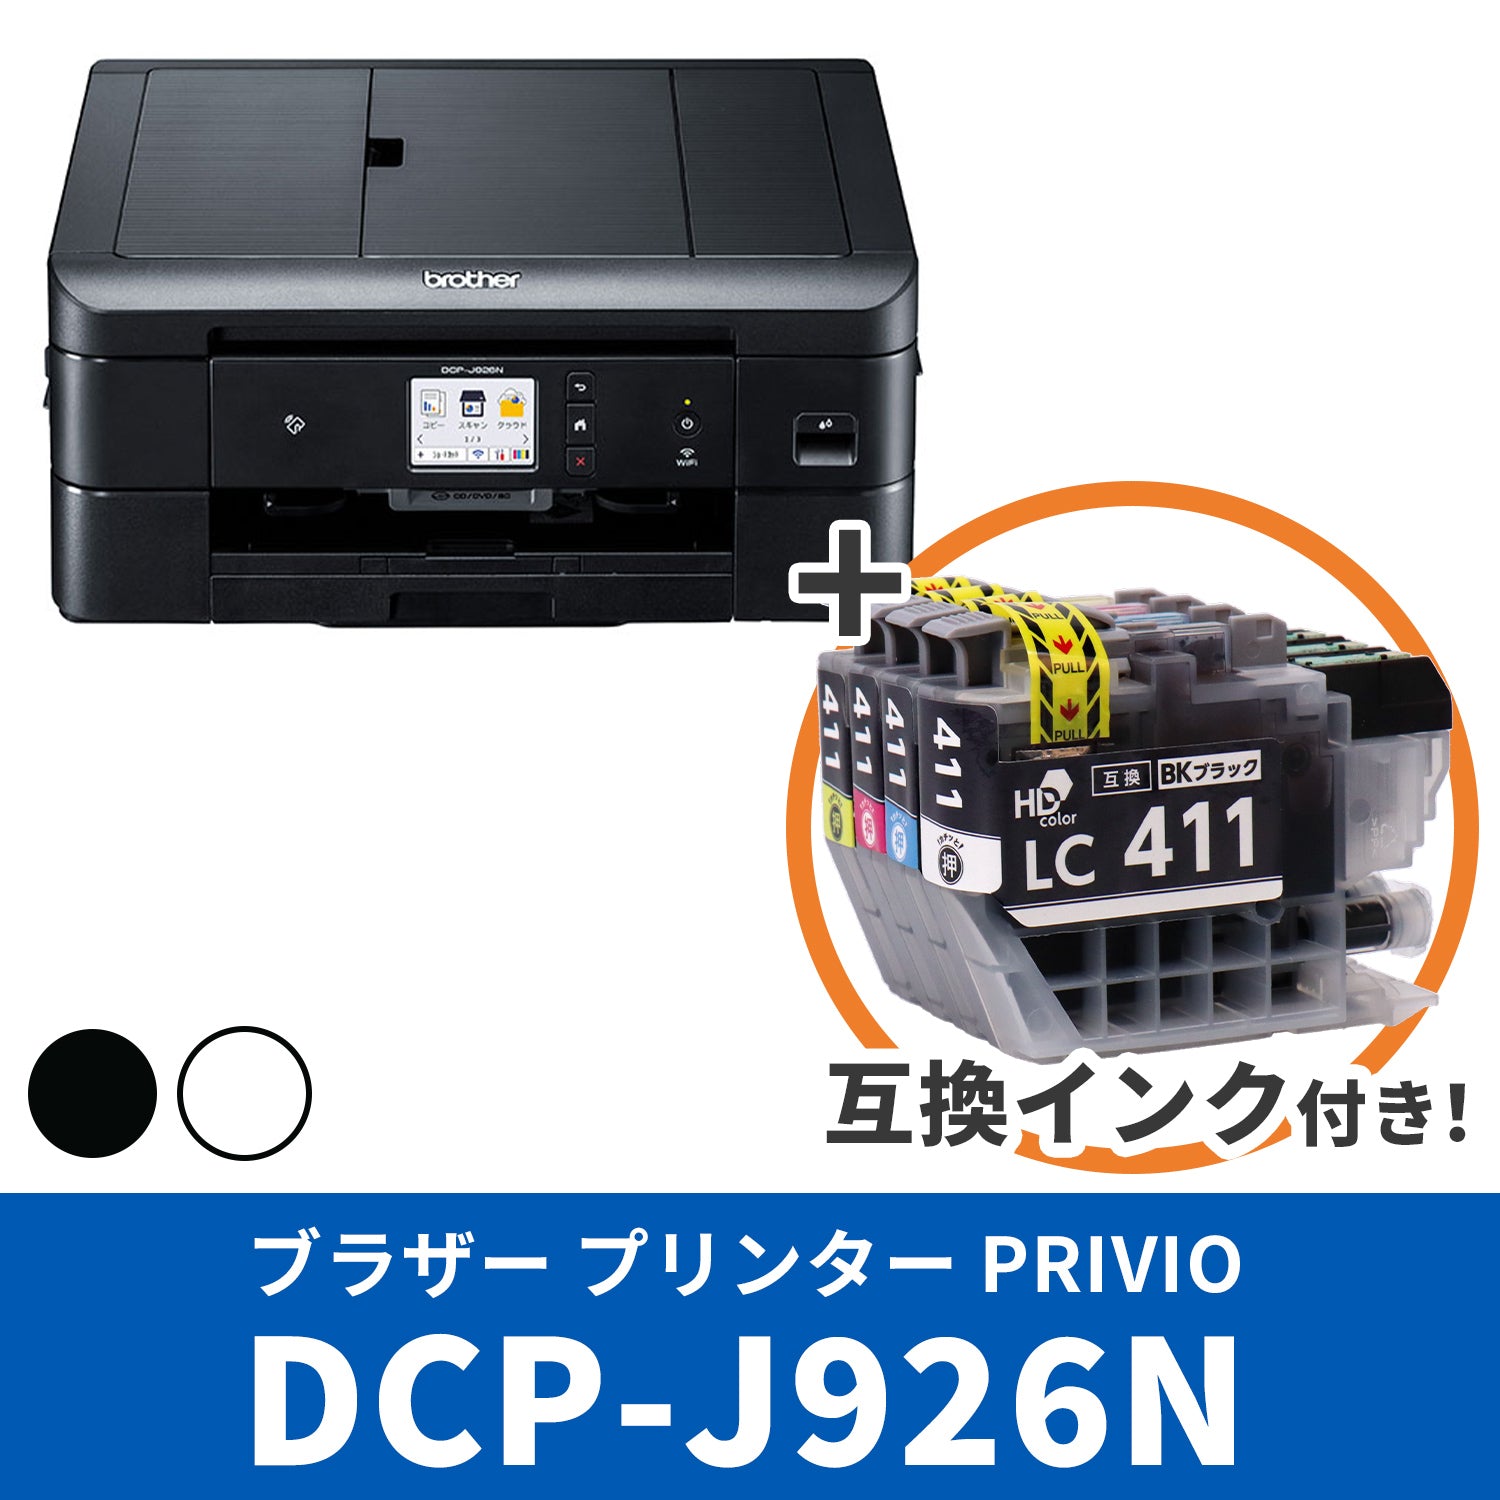 ブラザー PRIVIO DCP-J526N プリンターと互換インクのセット